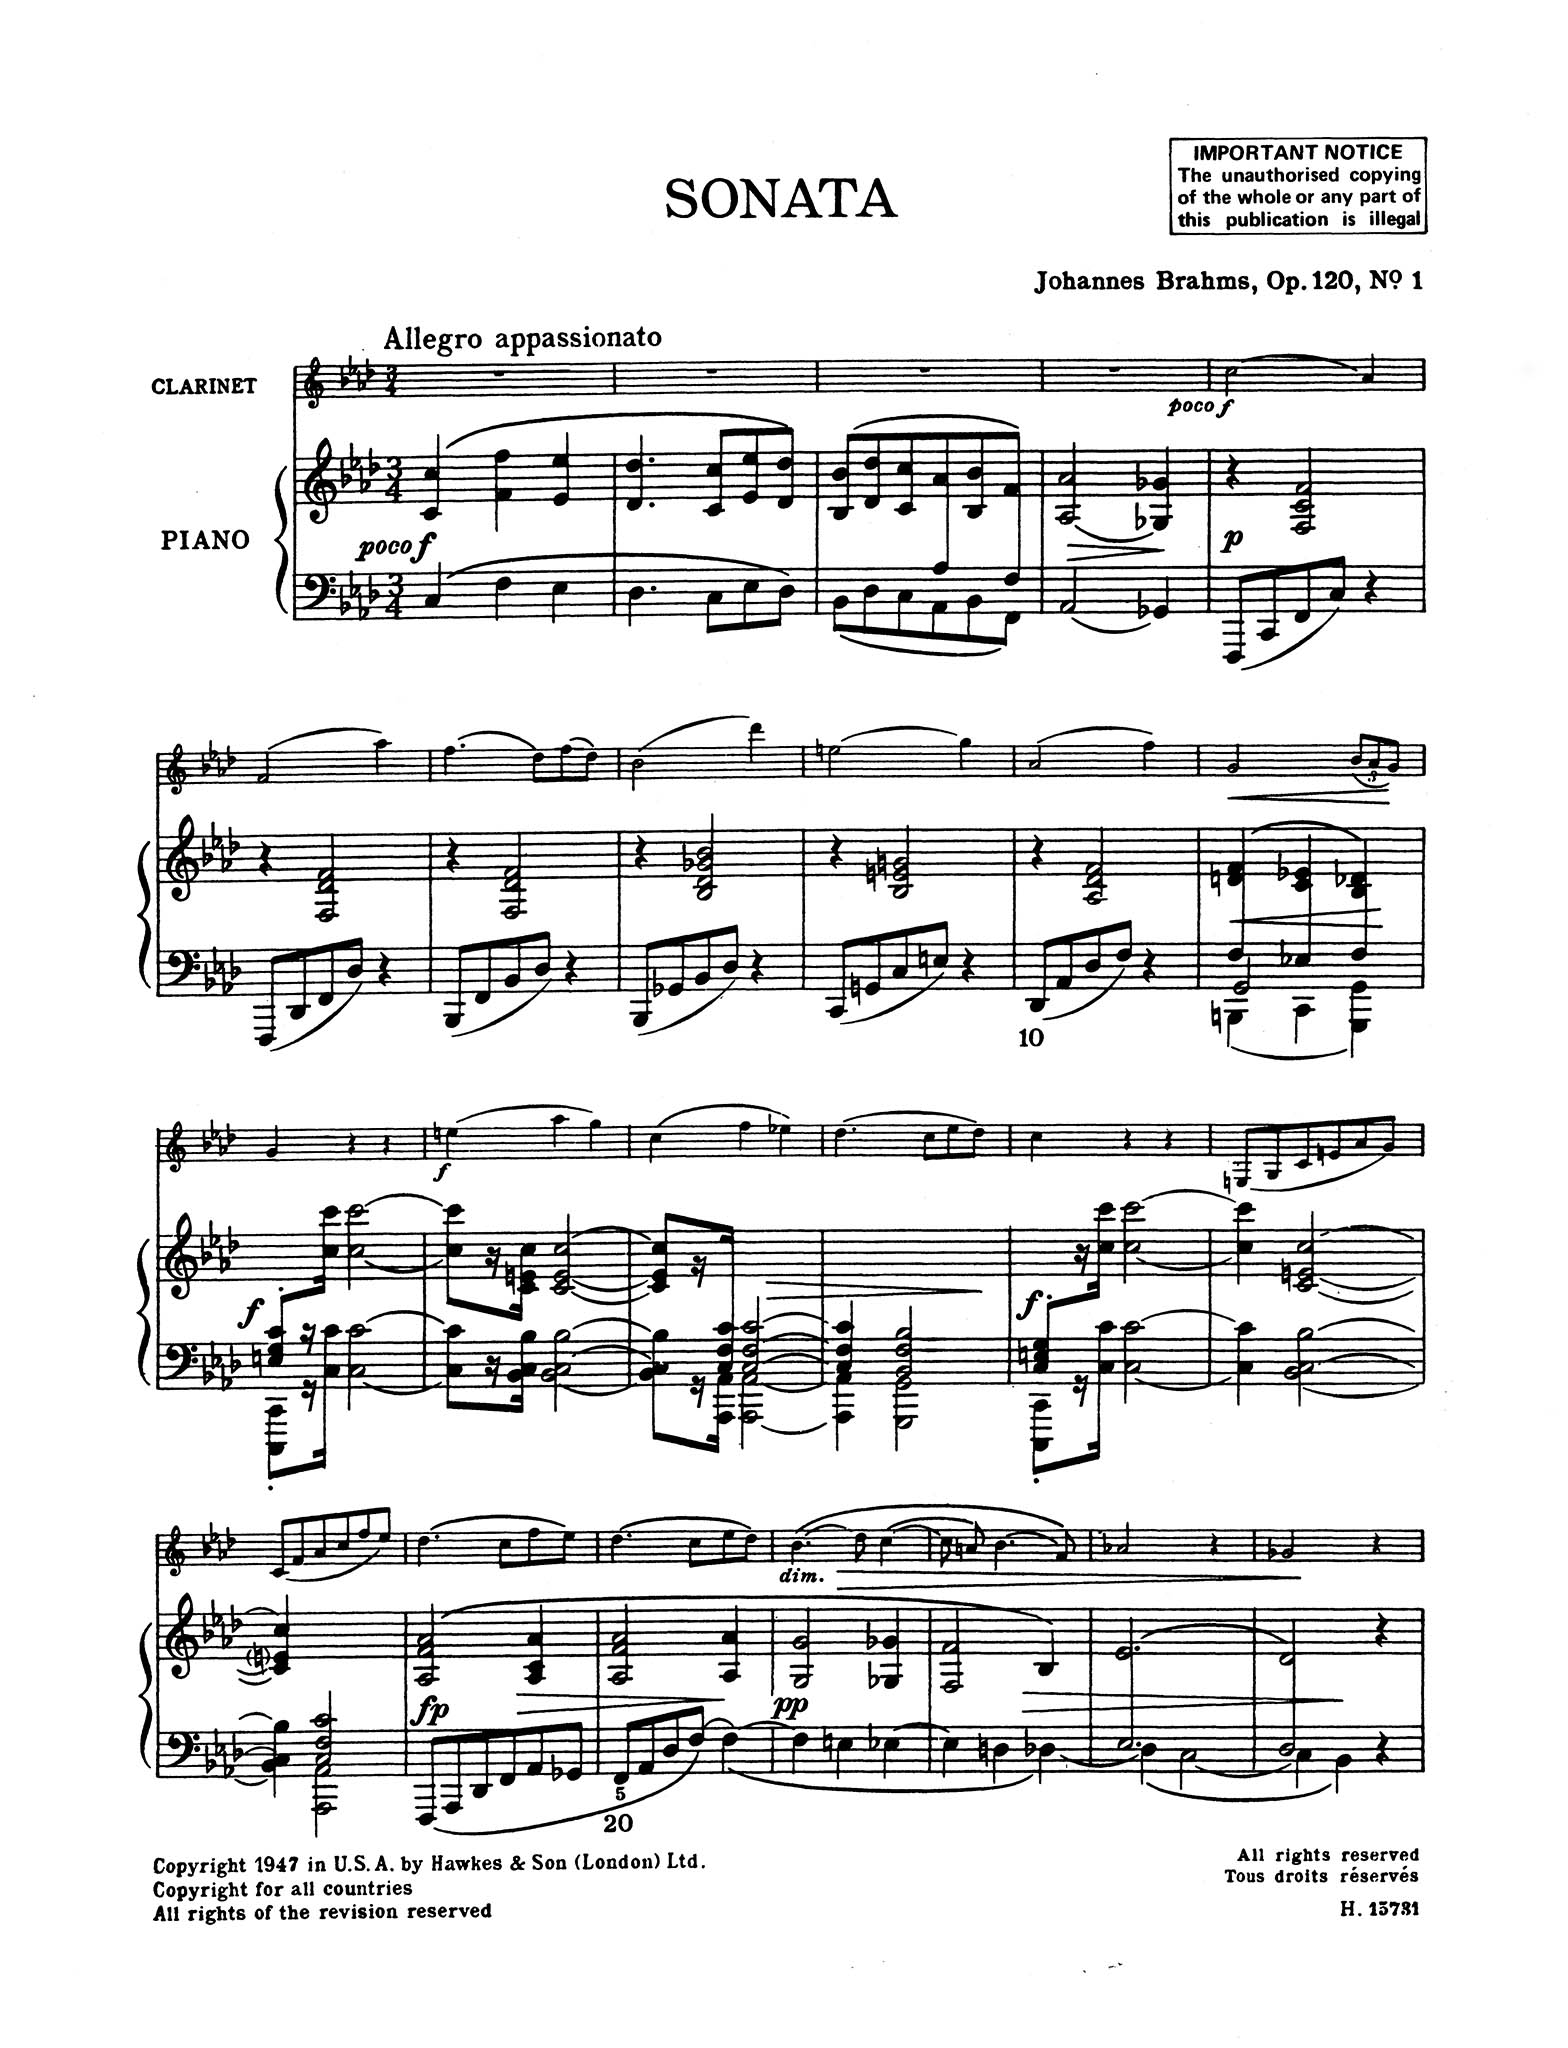 Sonata in F Minor, Op. 120 No. 1 - Movement 1